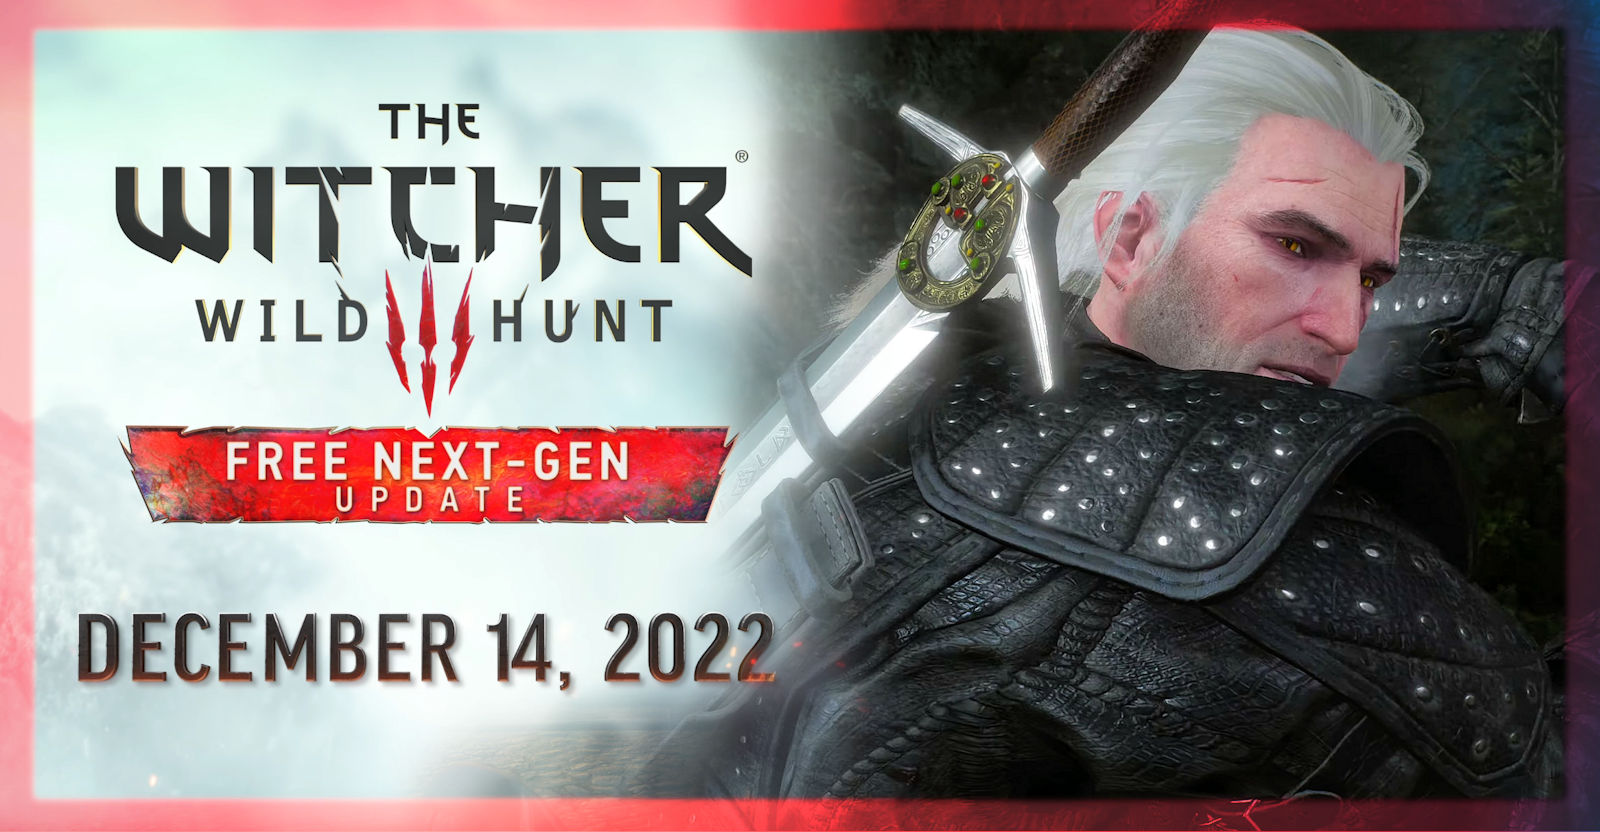 The Witcher 3 gets 'next gen' upgrade in December